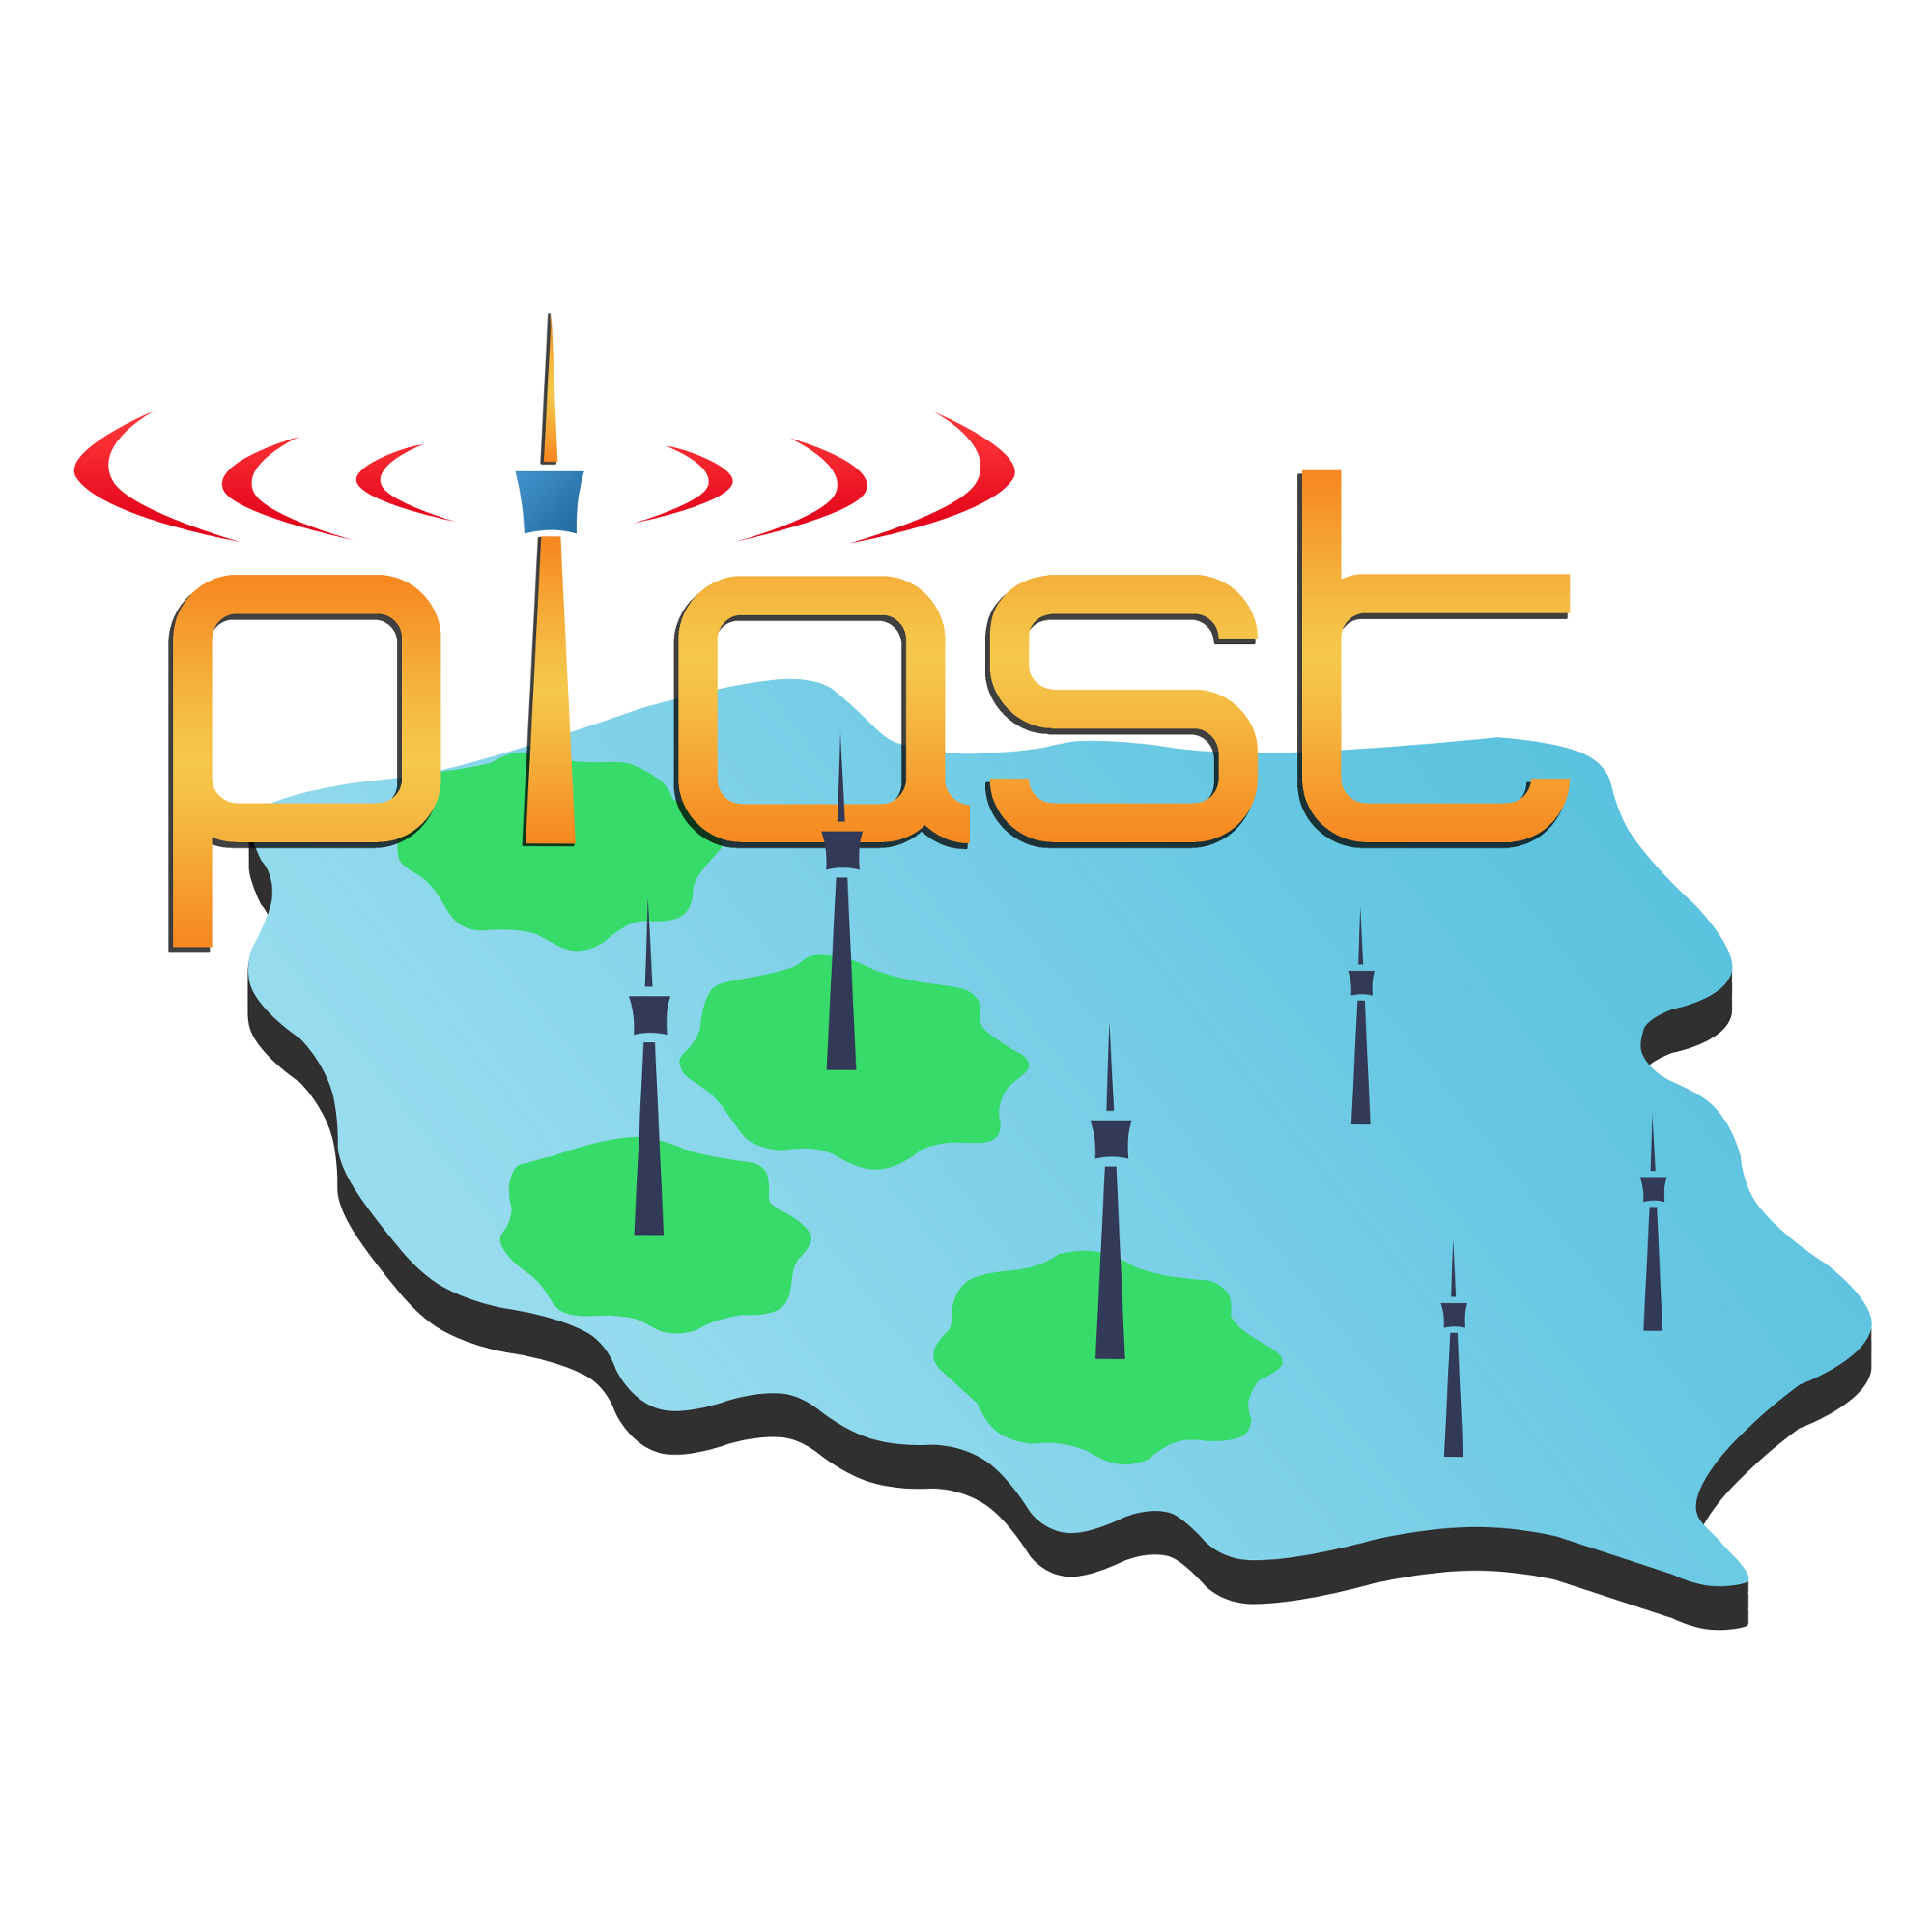 Piast logo